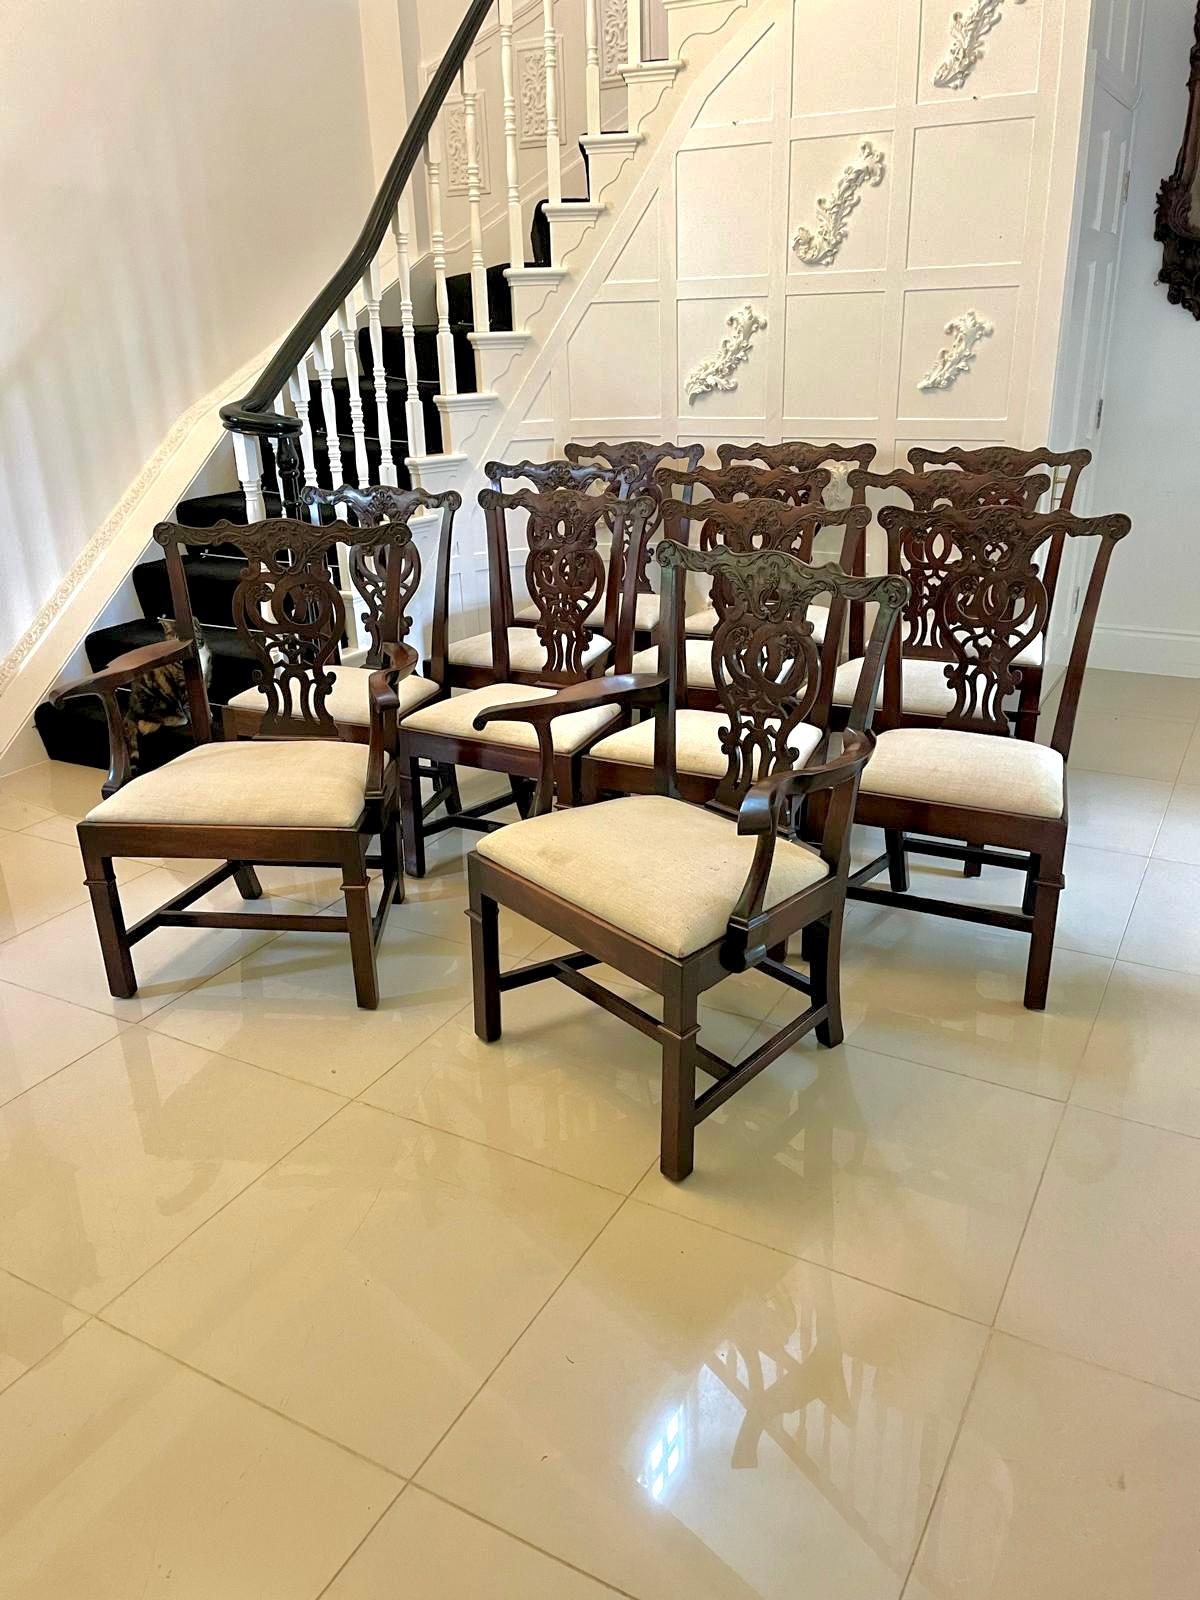 Satz von 12 antiken, geschnitzten Chippendale-Stühlen aus Mahagoni des 18. Jahrhunderts, bestehend aus 2 Ellbogenstühlen mit geformten, offenen Armlehnen und 10 Einzelstühlen mit einer geschnitzten Mahagoni-Deckelschiene und einem Mittelstück, die